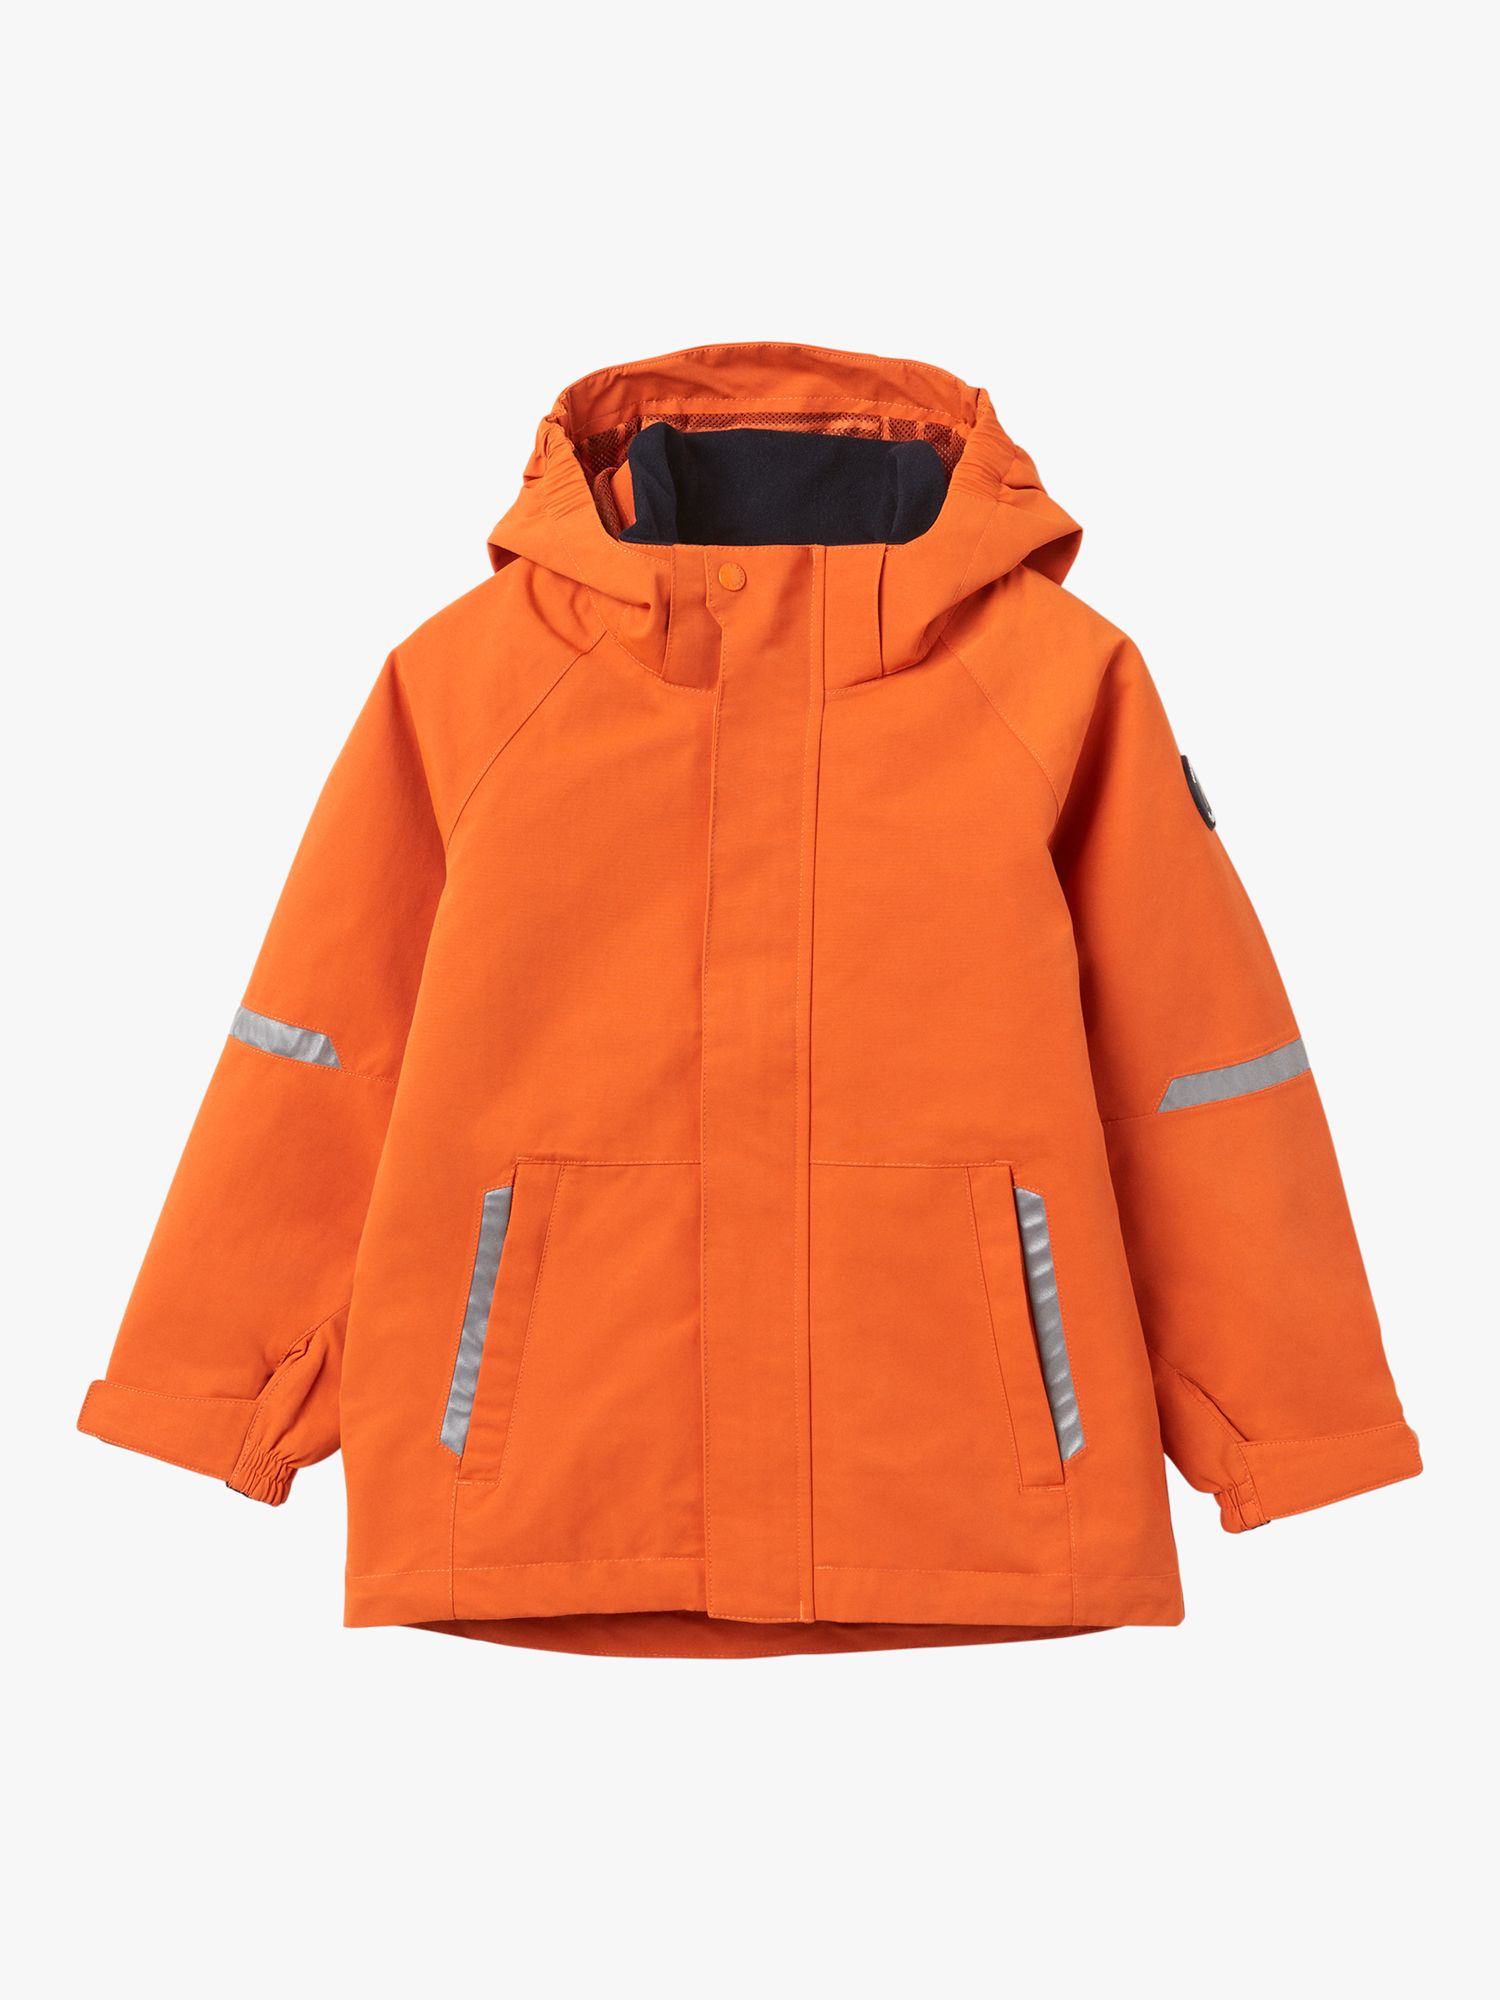 Polarn O. Pyret Kids' Waterproof Shell Coat, Orange at John Lewis ...